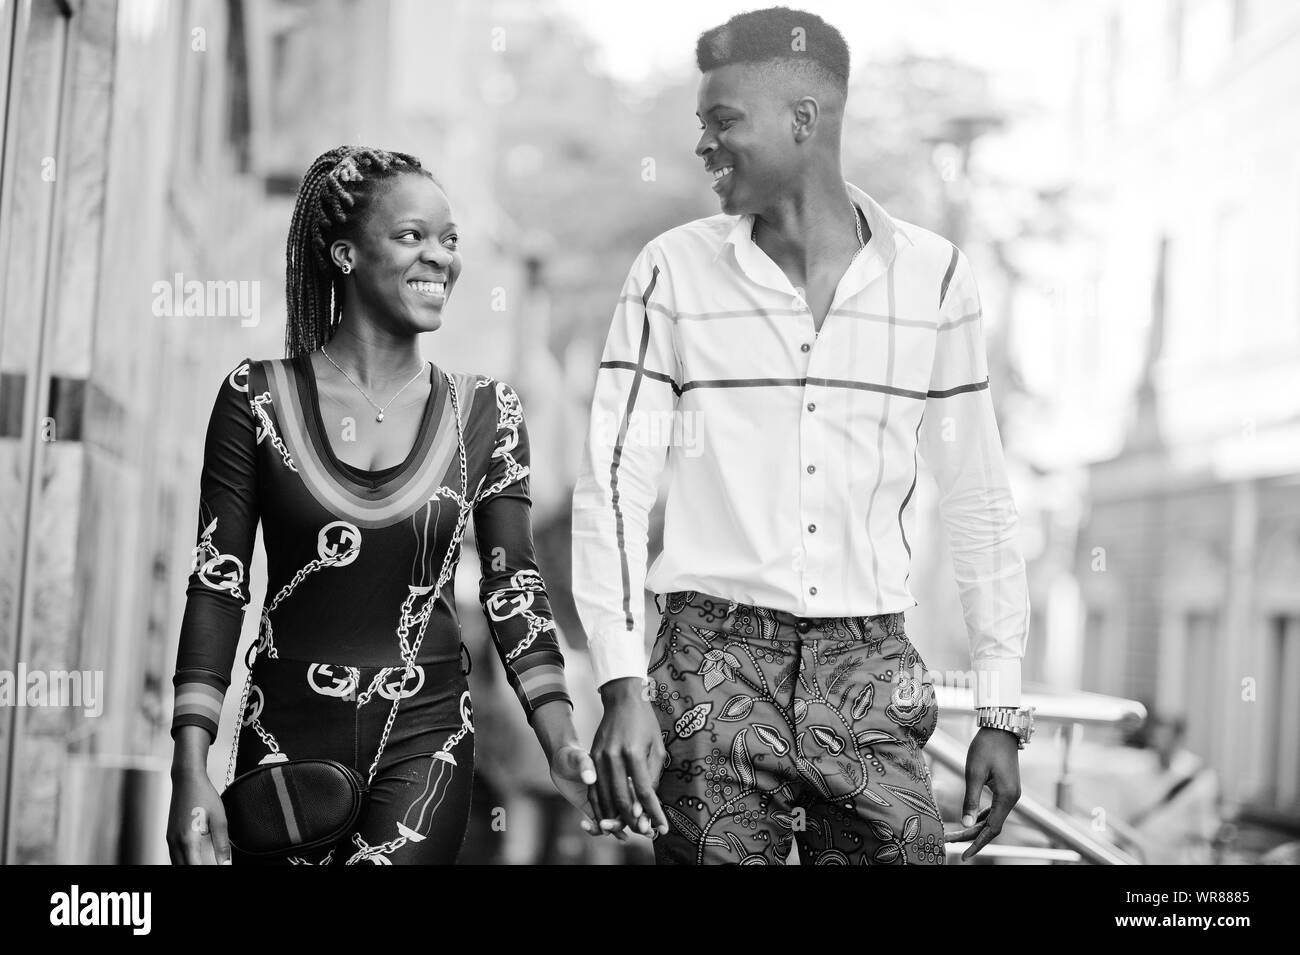 Bello stile americano africano giovane poste lungo la strada insieme nell'amore. Foto Stock